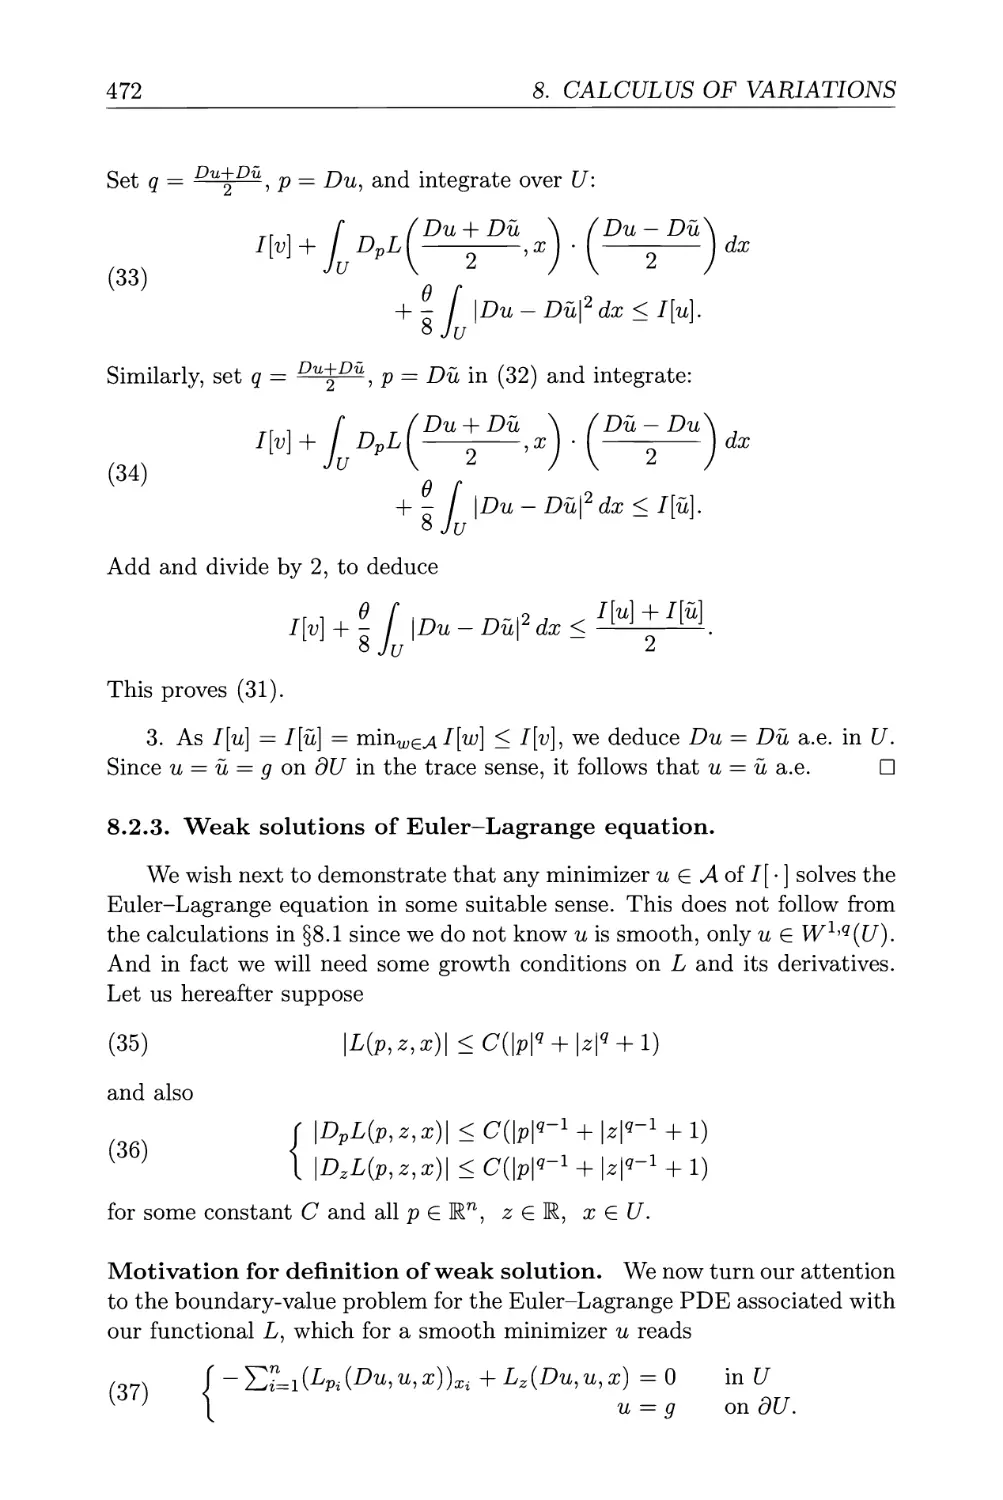 8.2.3. Weak solutions of Euler-Lagrange equation